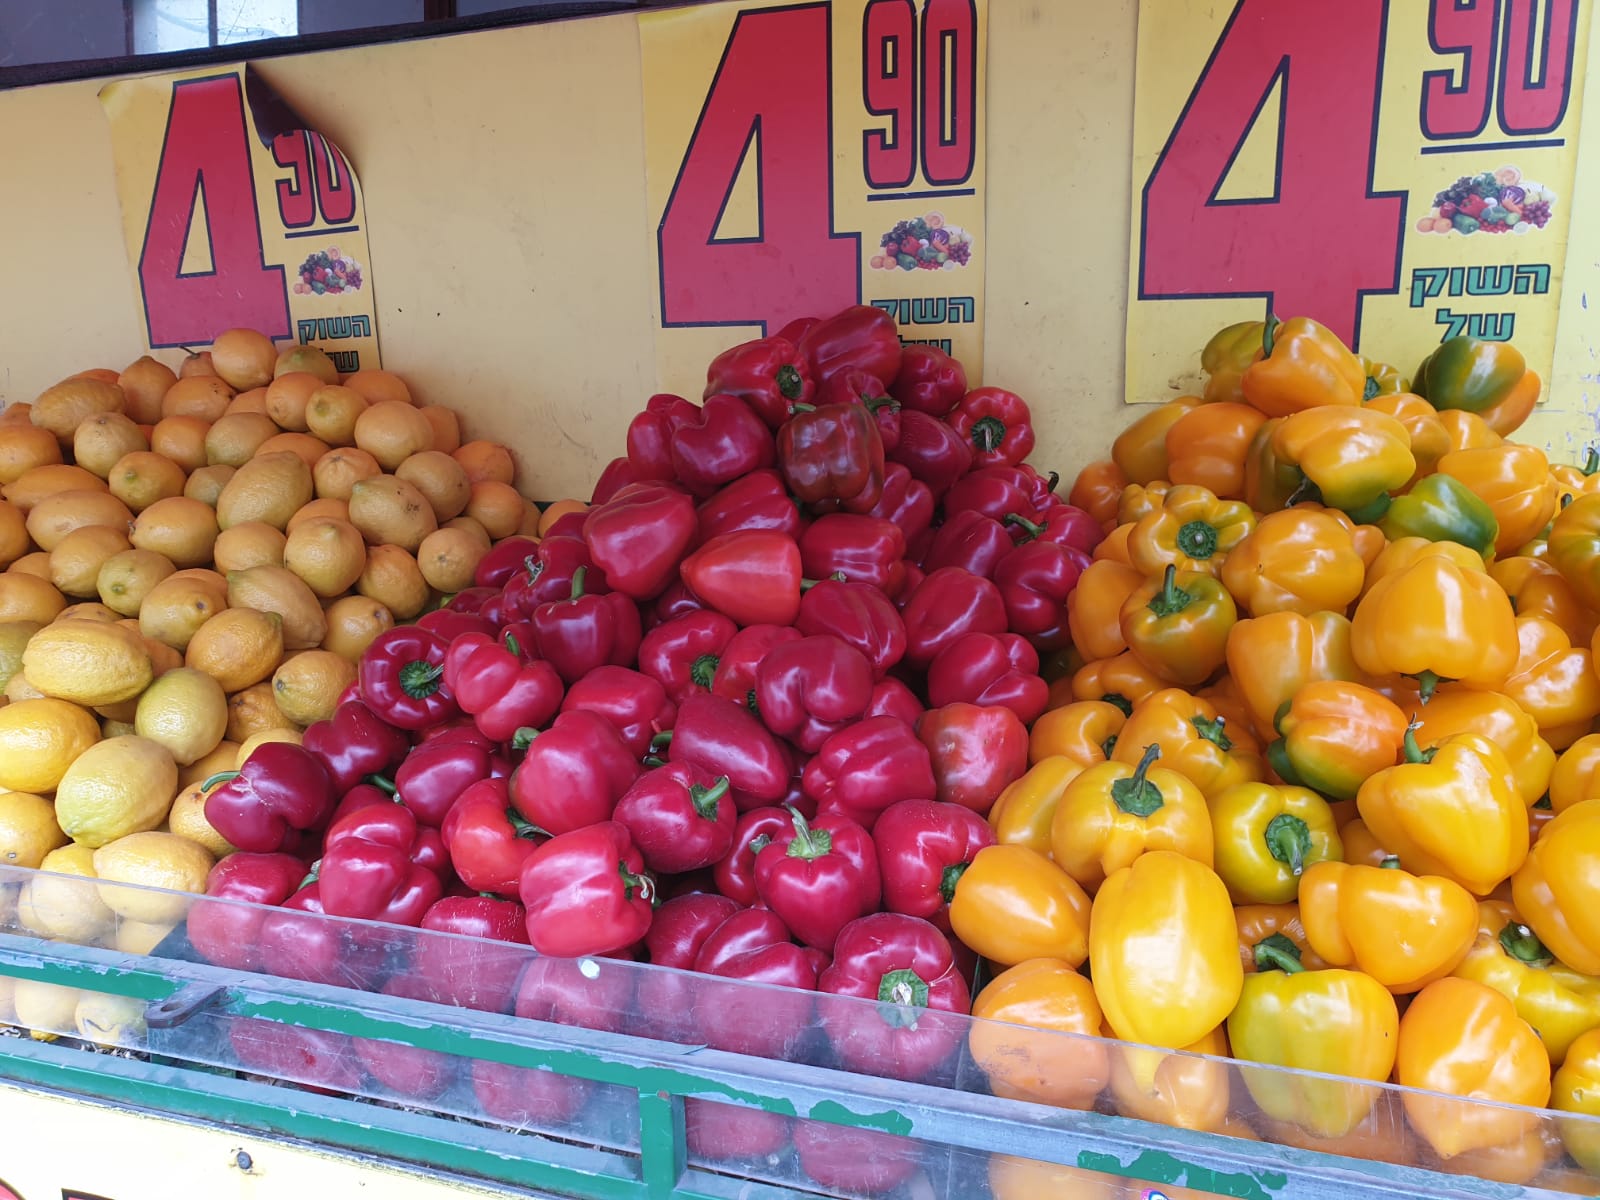 أسعار خيالية لا تنافس لدى سوق يافا للخضار والفواكه الطازجة